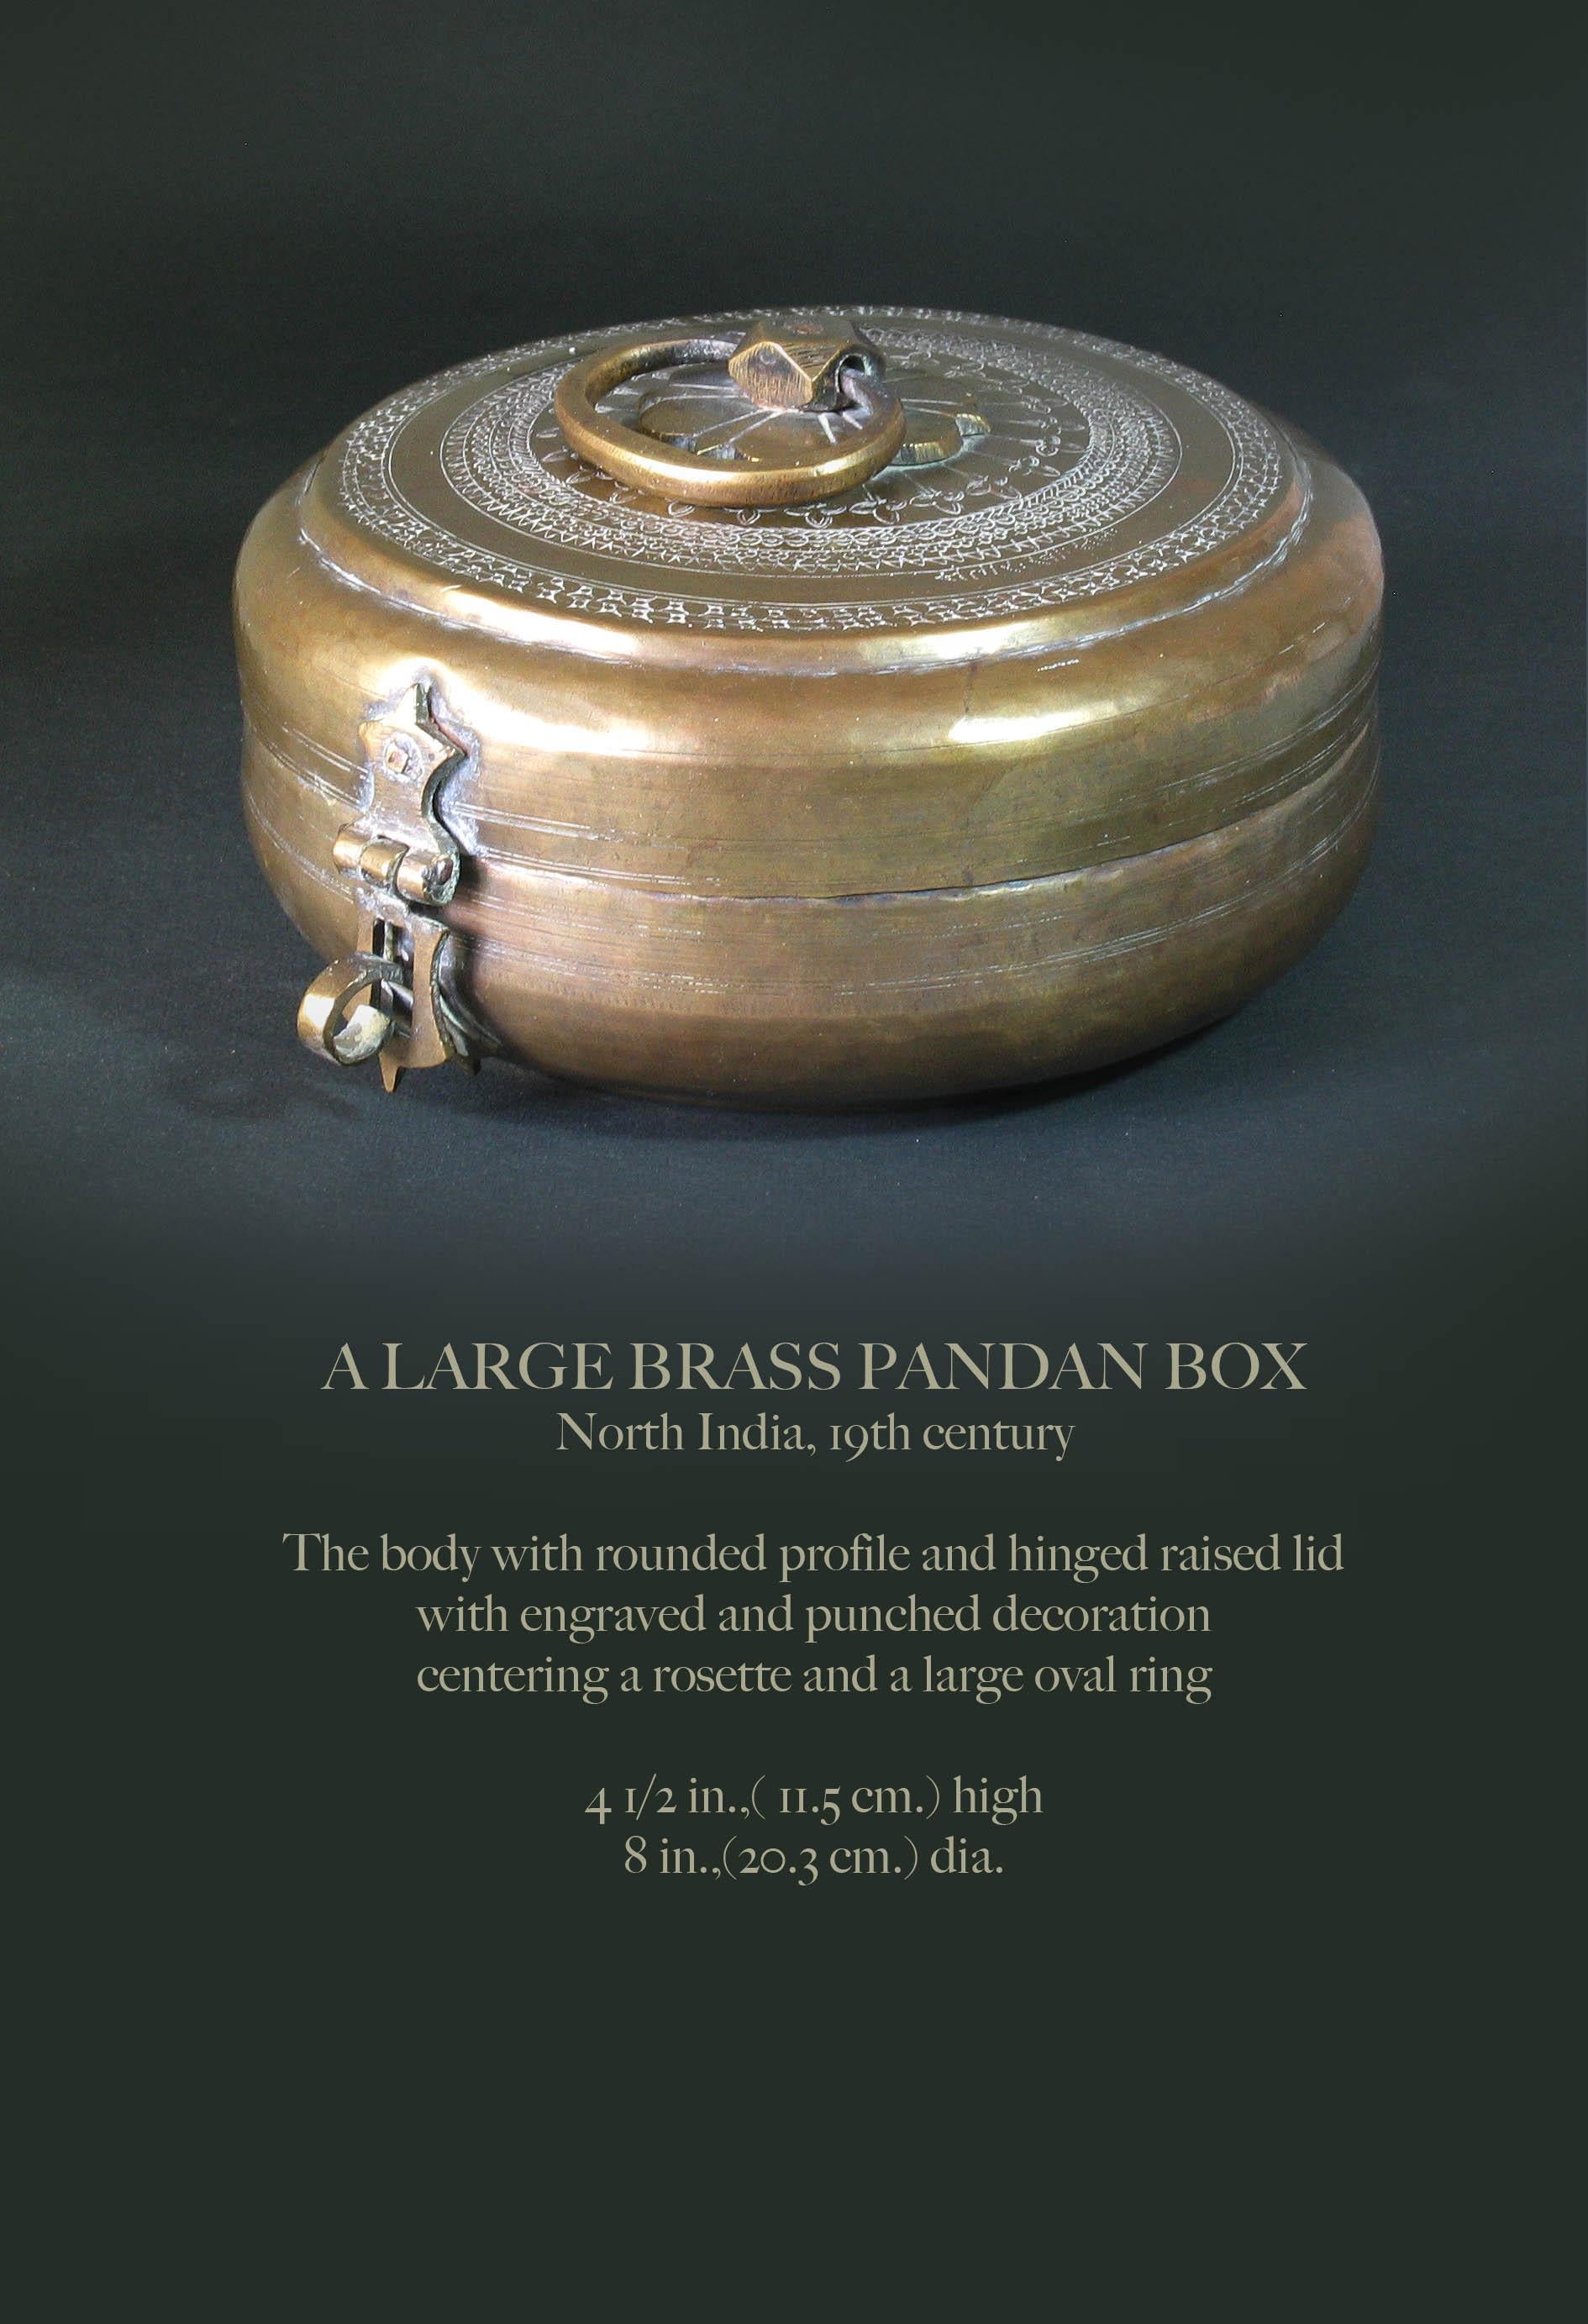 Une grande boîte de pandan en laiton
Inde du Nord, 19e siècle

Le corps avec un profil arrondi et un couvercle surélevé à charnière.
avec décor gravé et poinçonné
centré d'une rosette et d'un grand anneau ovale.

Mesures : 4 1/2 in.,( 11.5